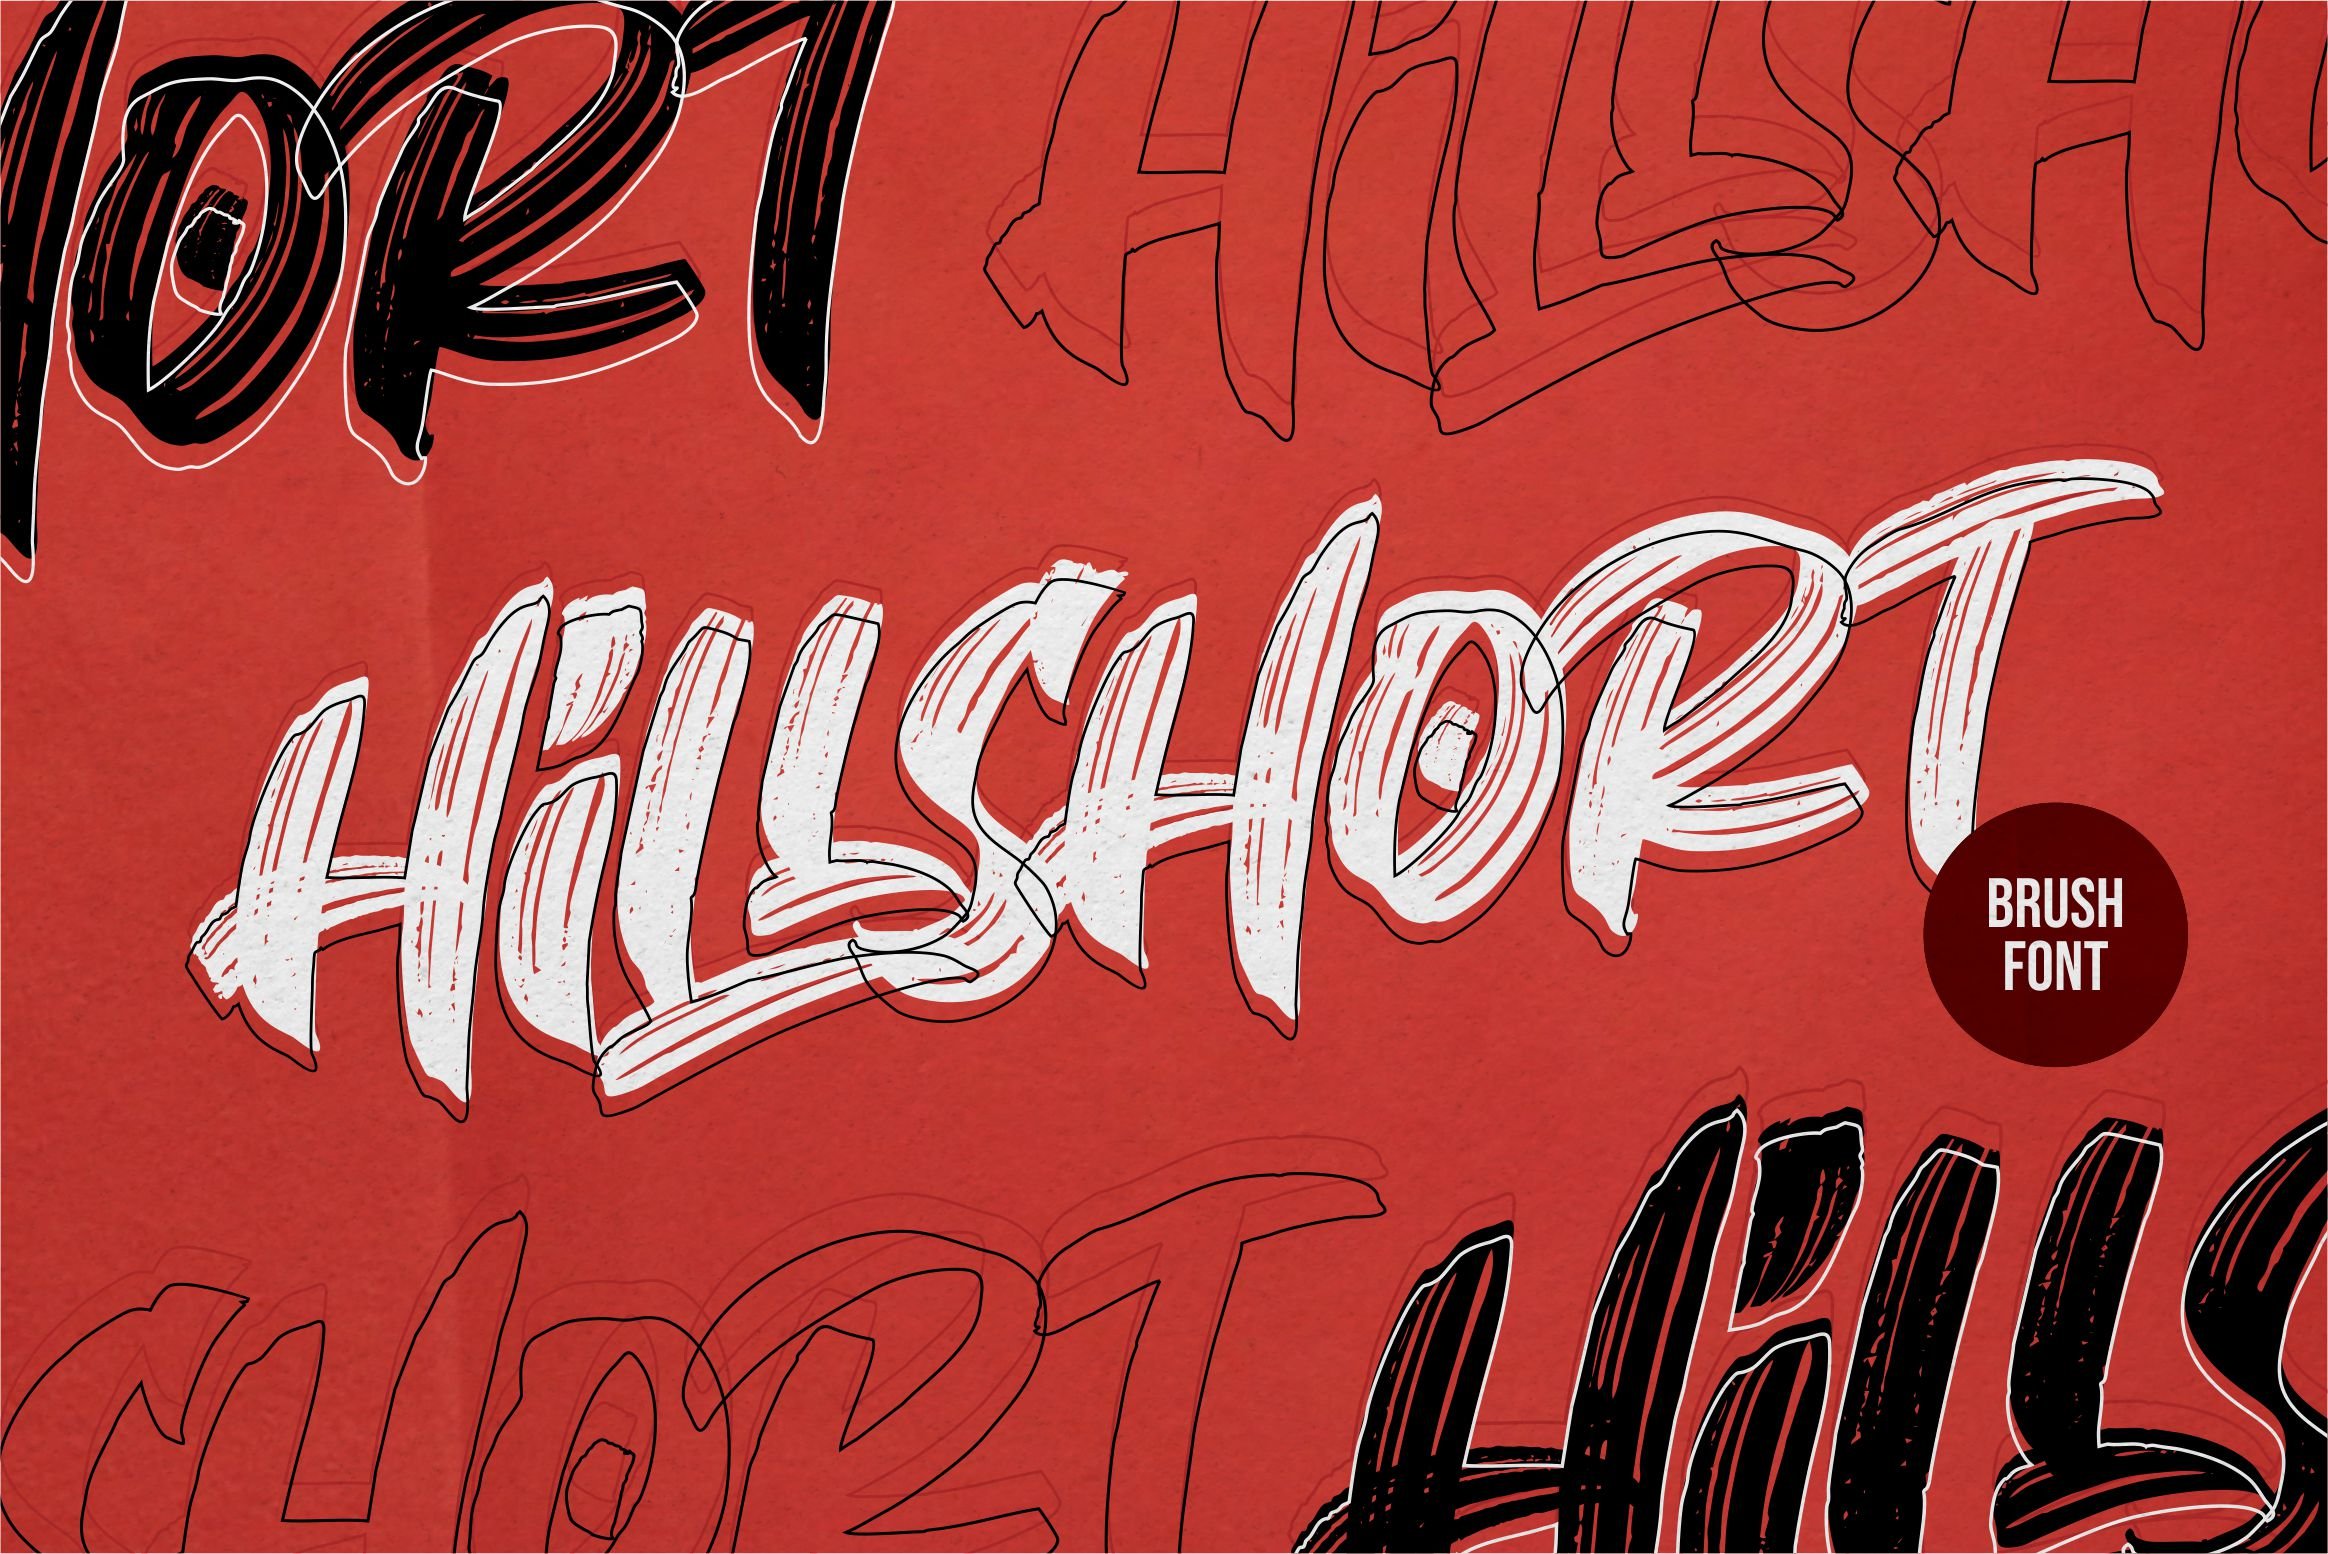 Hillshort -Urban Brush- cover image.